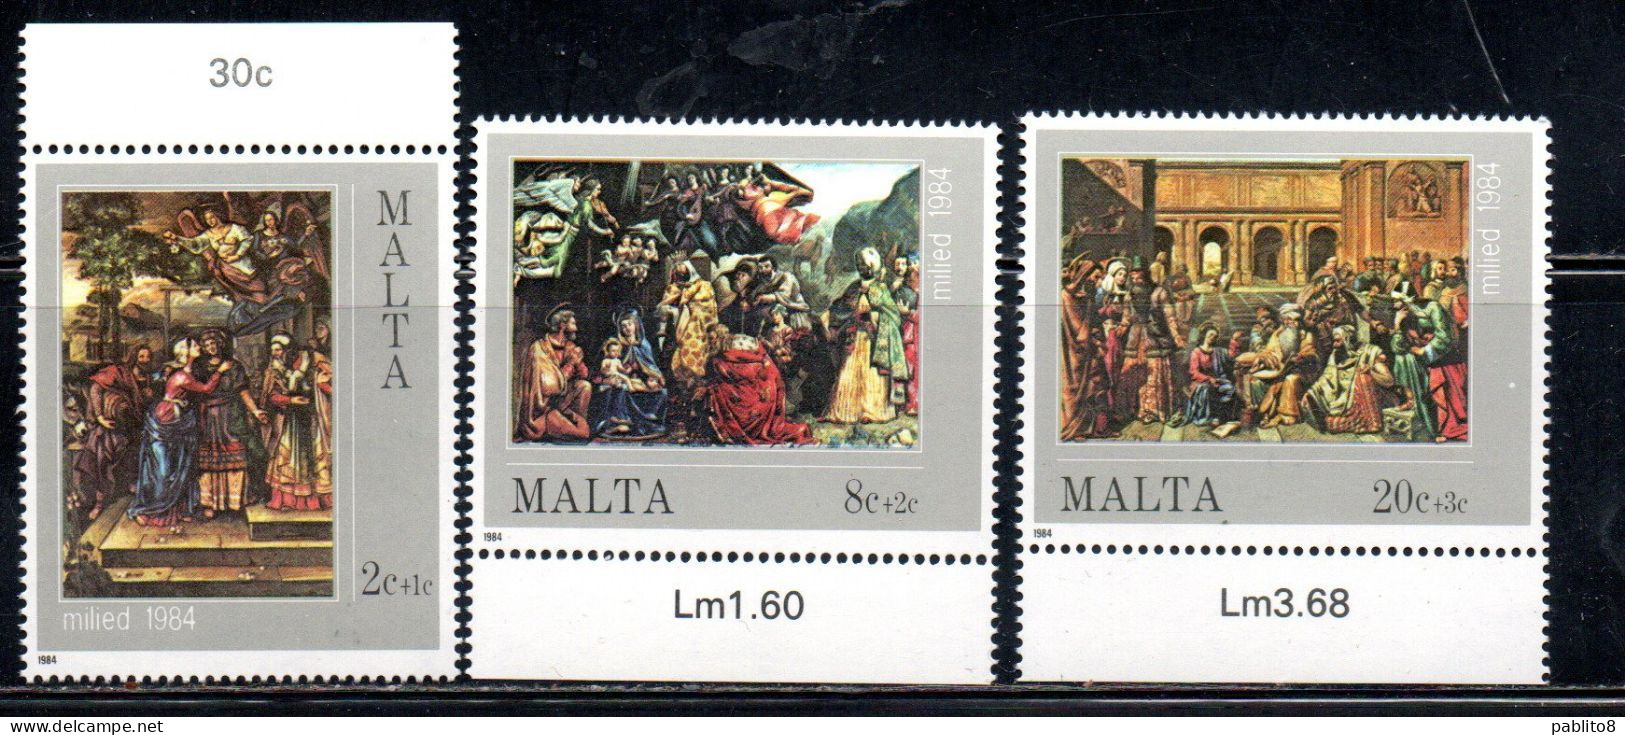 MALTA 1984 CHRISTMAS NATALE NOEL WEIHNACHTEN NAVIDAD NATAL COMPLETE SET SERIE COMPLETA MNH - Malte